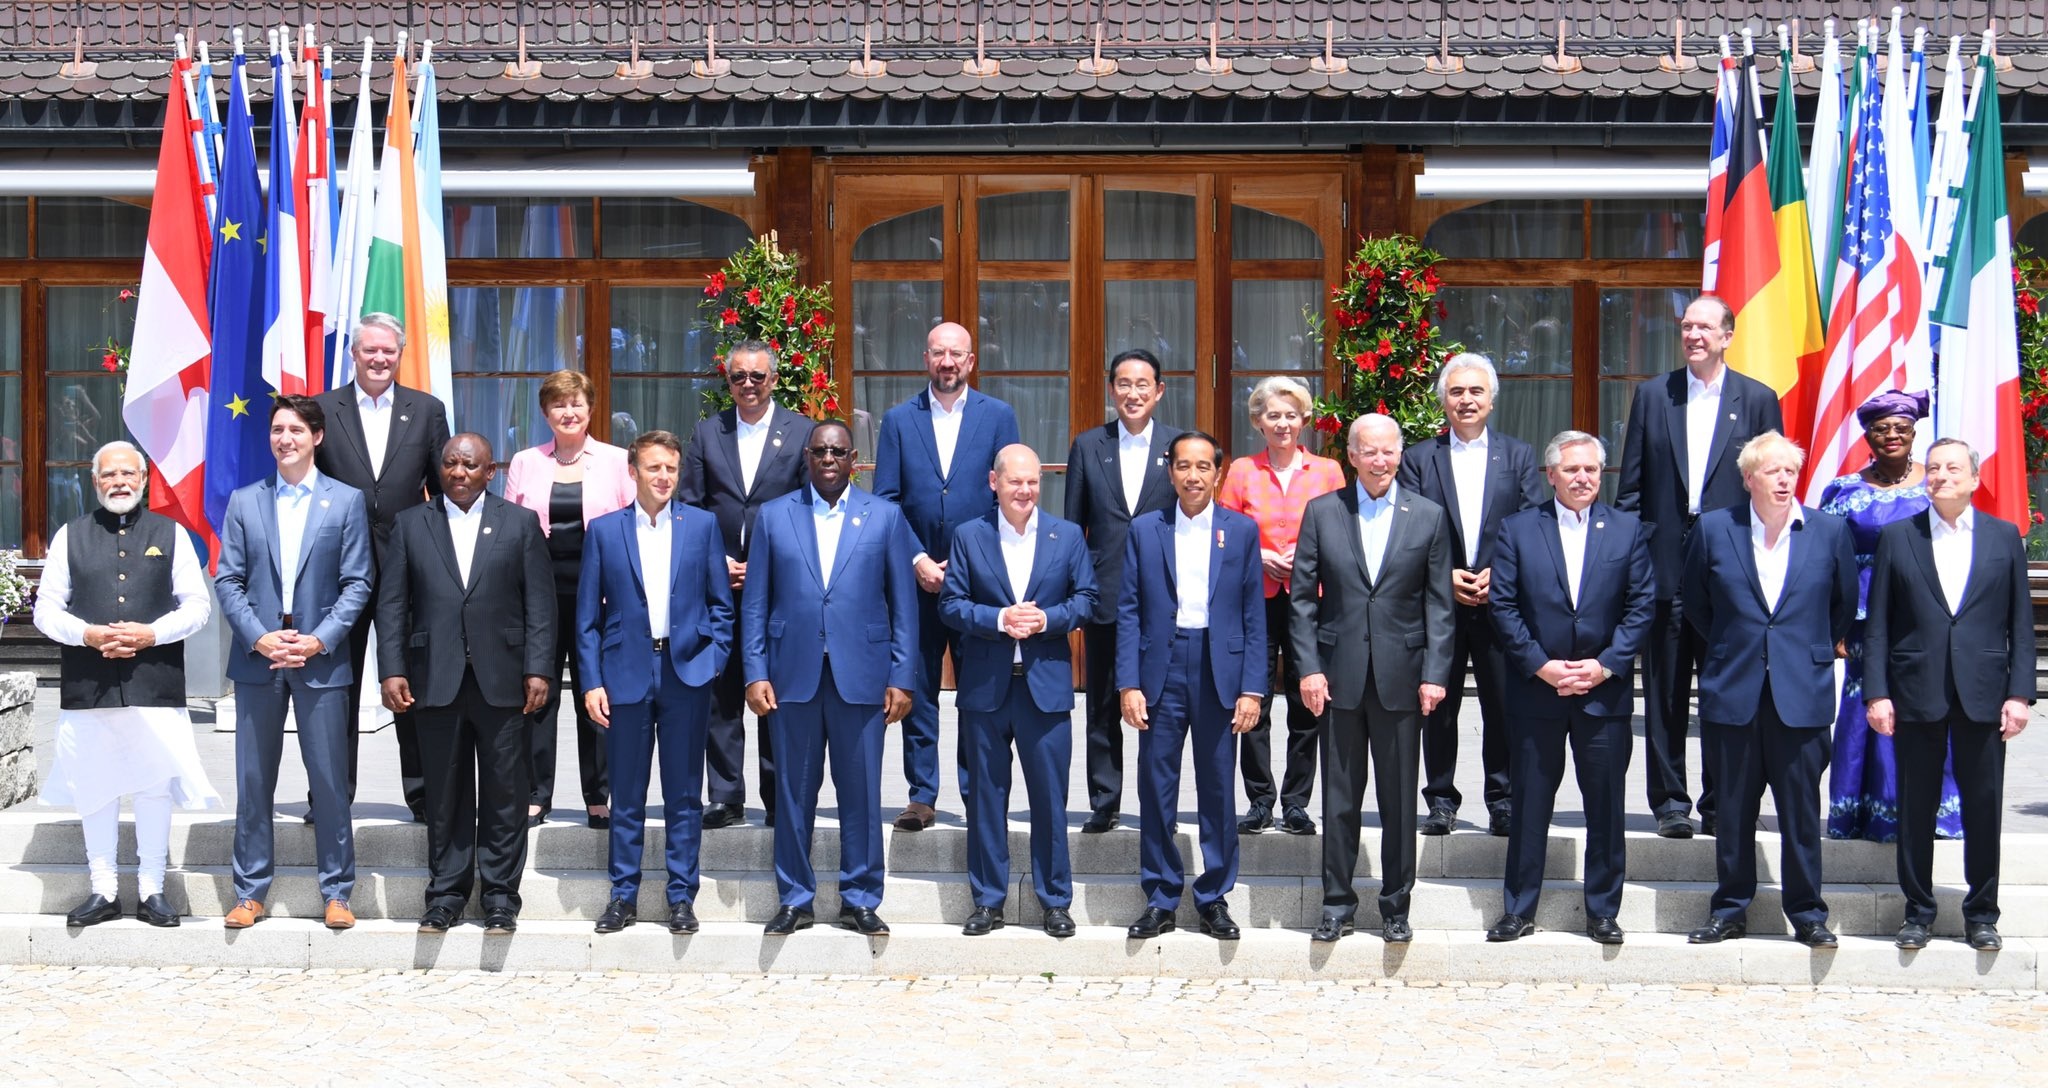 शिखर सम्मेलन शुरू होने से पहले G-7 समिट में शामिल हो रहे सभी नेताओं ने ग्रुप फोटो खिंचवाई।